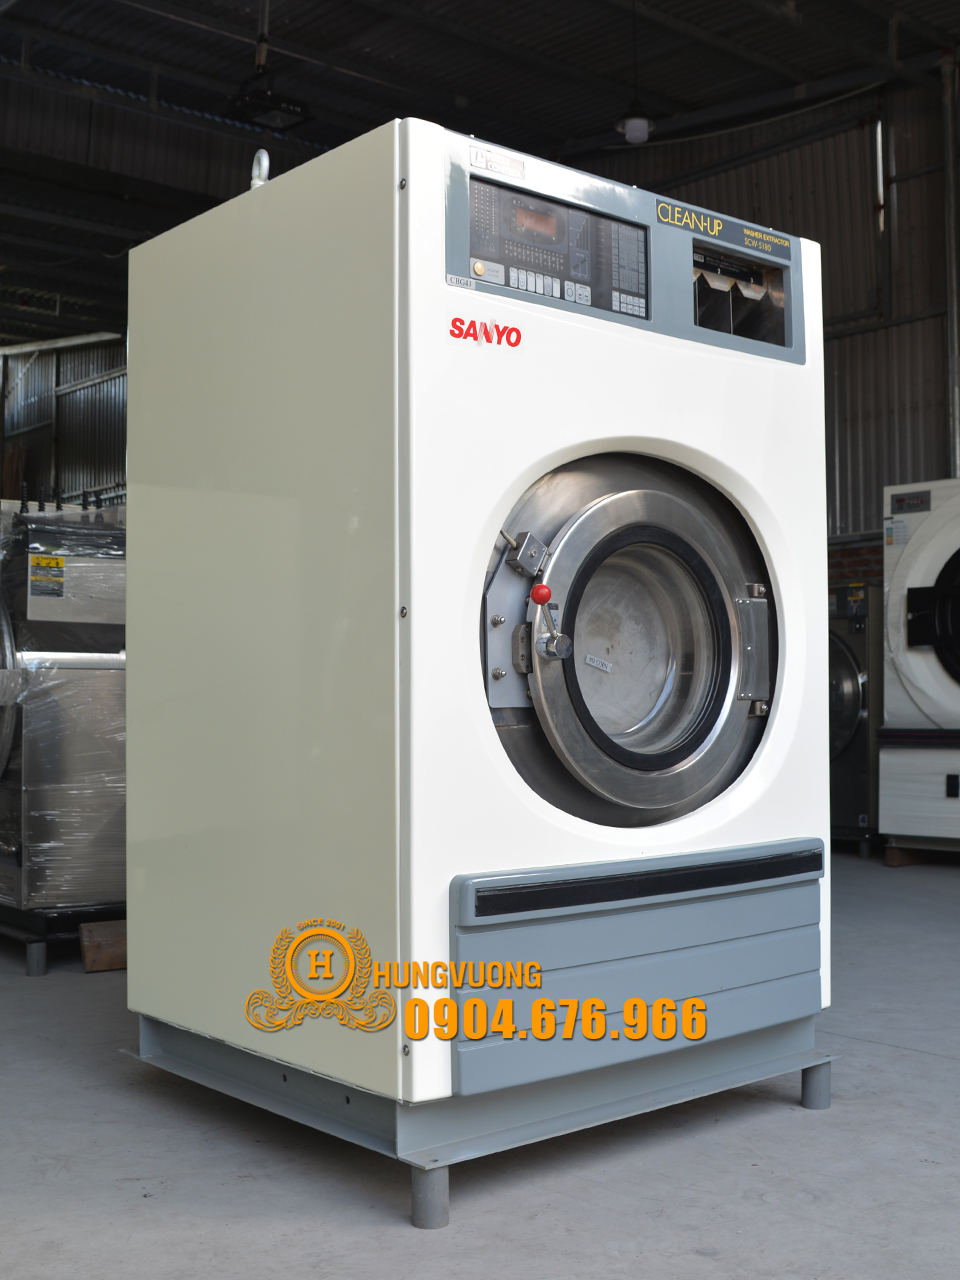 Mặt bên máy giặt công nghiệp SANYO SCW 5180, 18kg, chân chống rung, biến tần, Nhật Bản